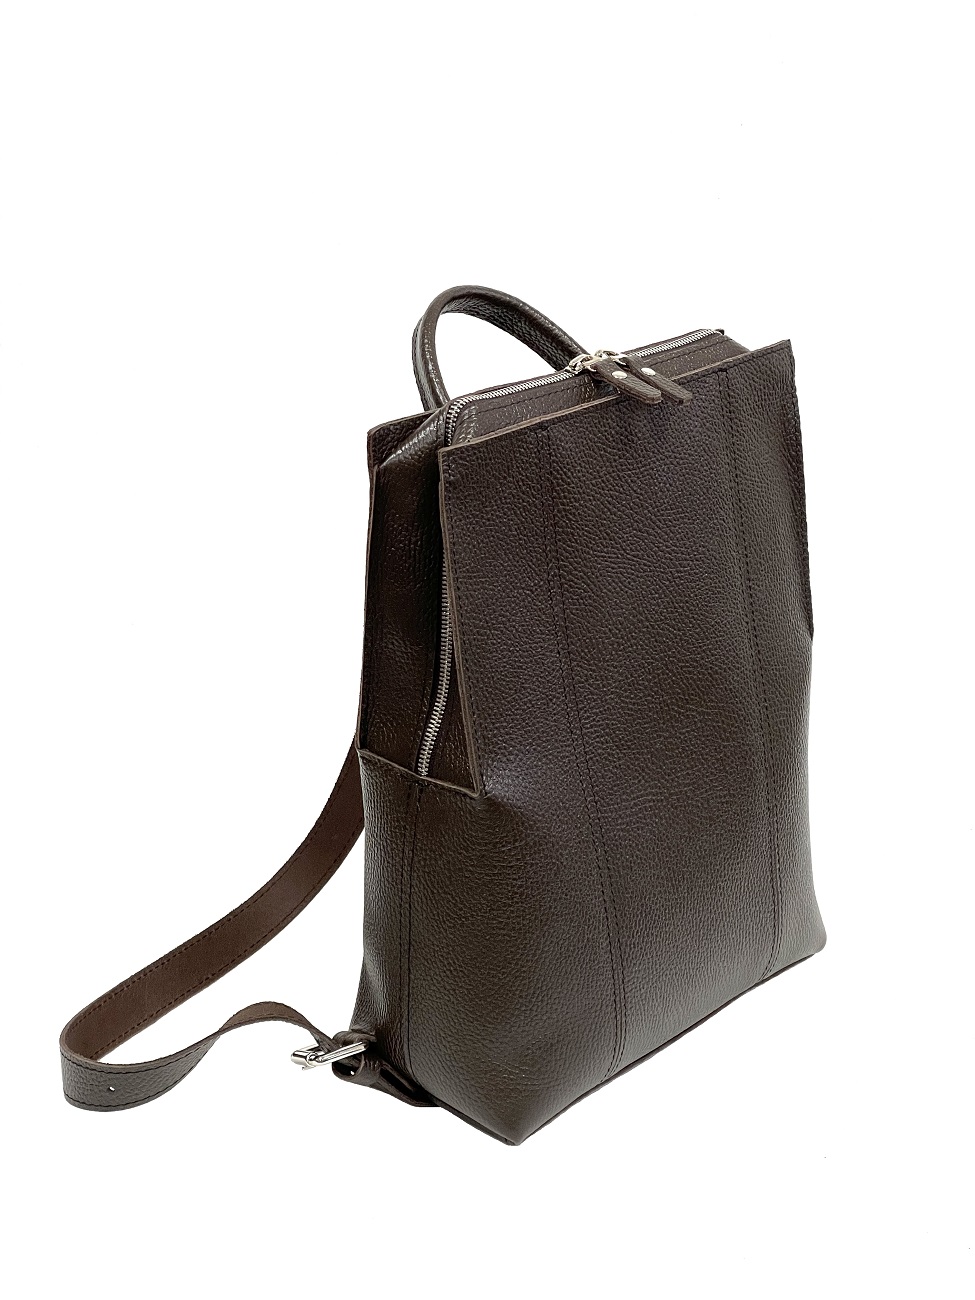 Женский рюкзак из натуральной кожи коричневый B014 brown grain